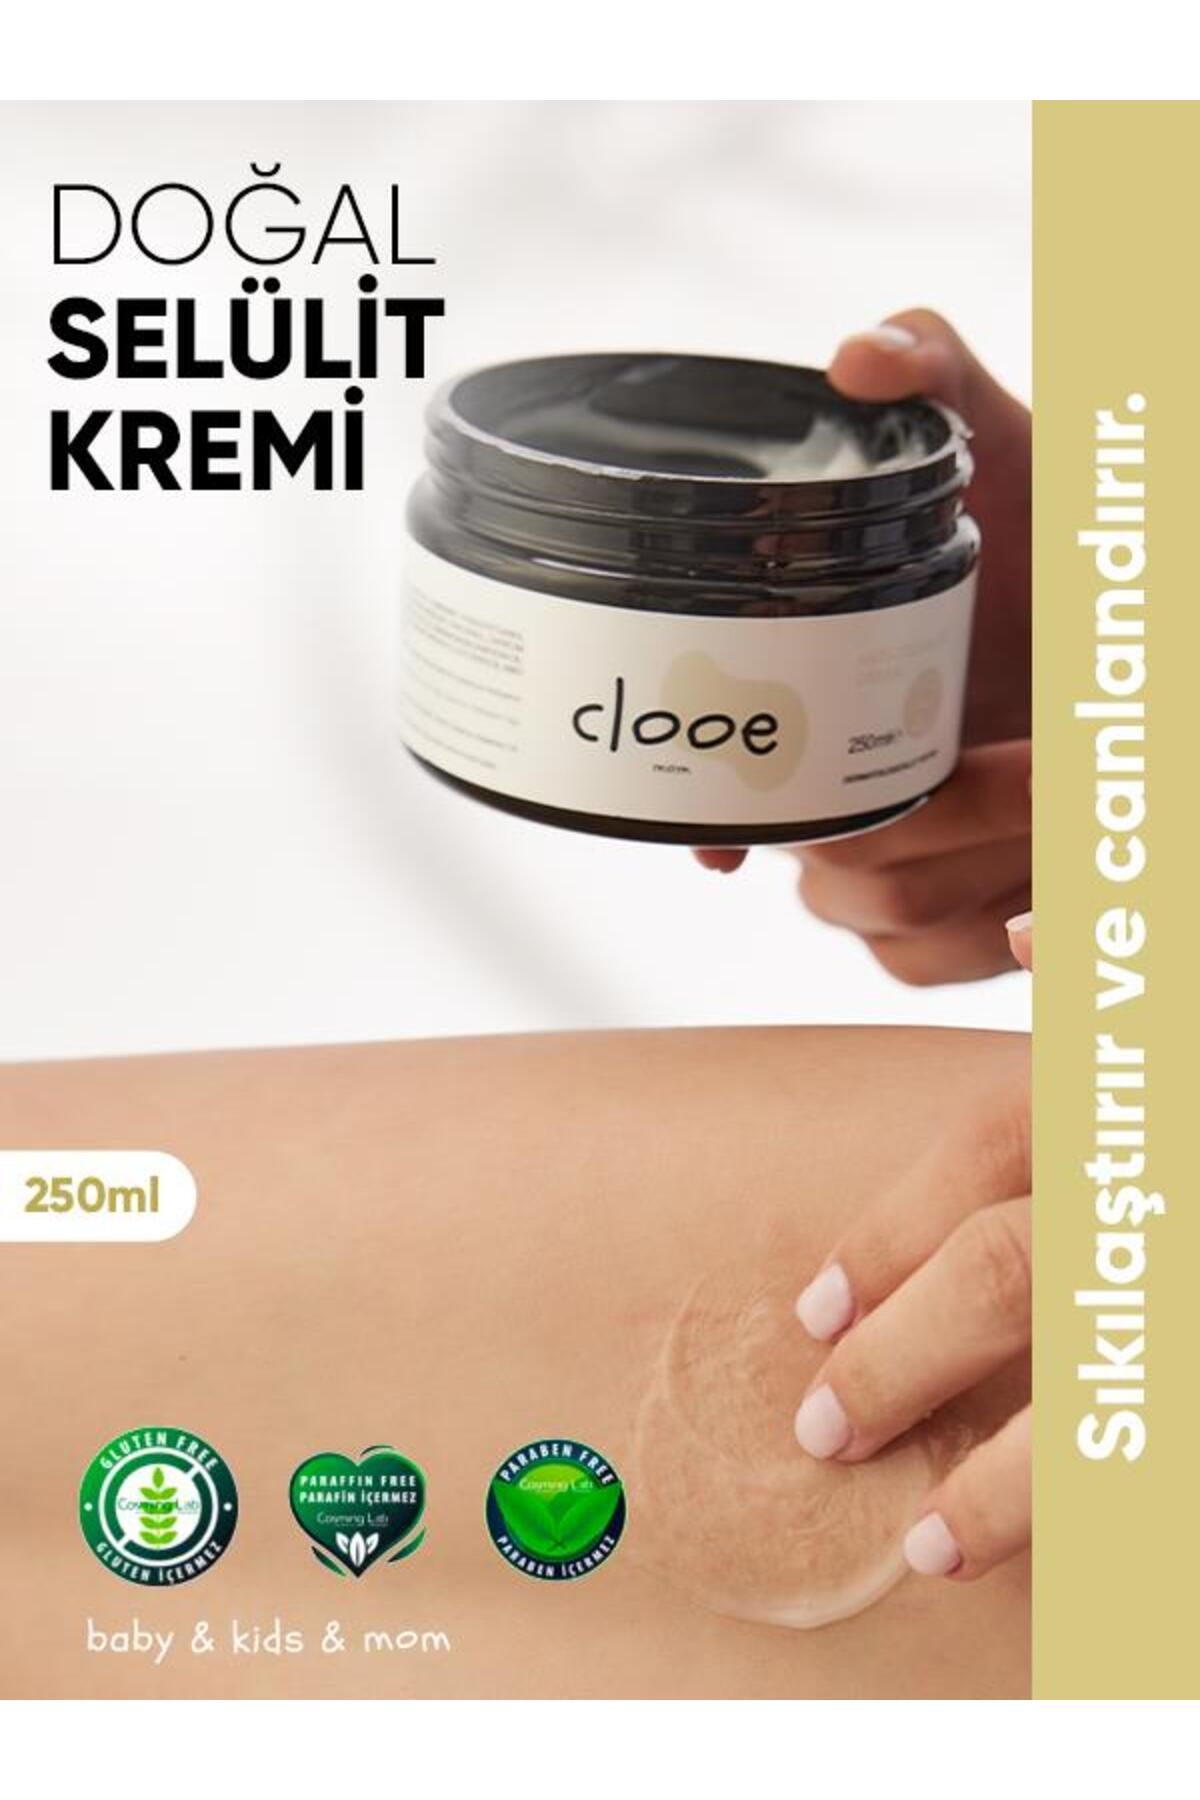 clooe Doğal Selülit Ve Çatlak Giderici Krem (250ML) - Bitkisel İçerikli, Spor İçin Etkili